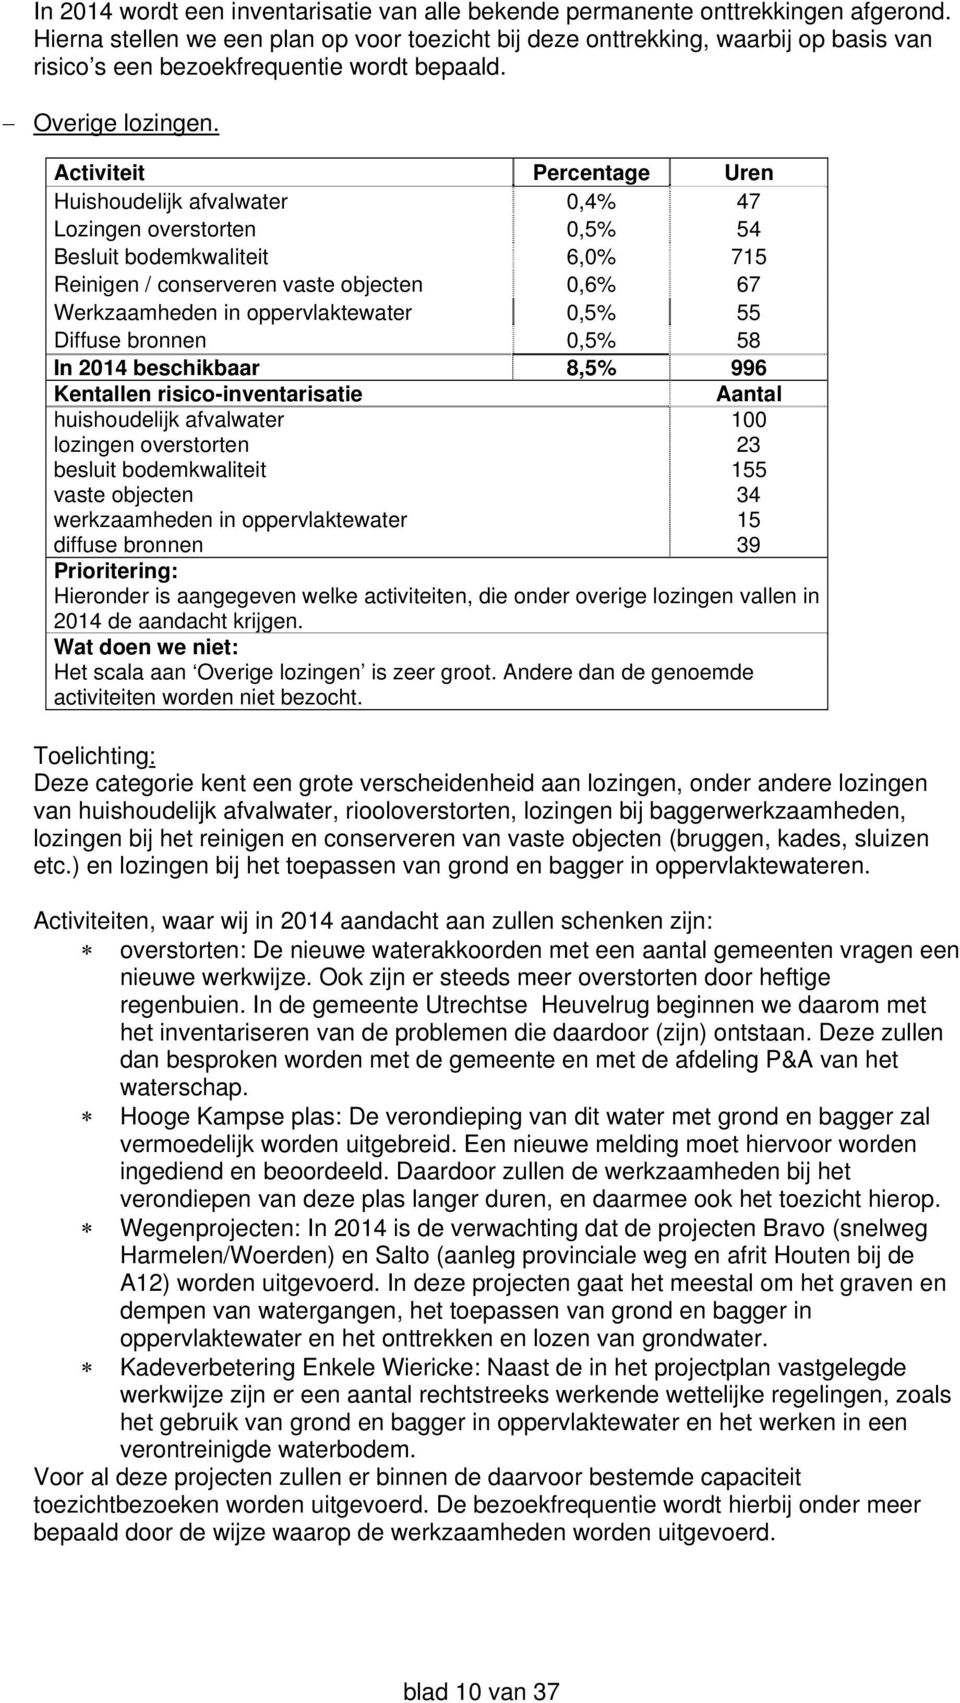 Activiteit Percentage Uren Huishoudelijk afvalwater 0,4% 47 Lozingen overstorten 0,5% 54 Besluit bodemkwaliteit 6,0% 715 Reinigen / conserveren vaste objecten 0,6% 67 Werkzaamheden in